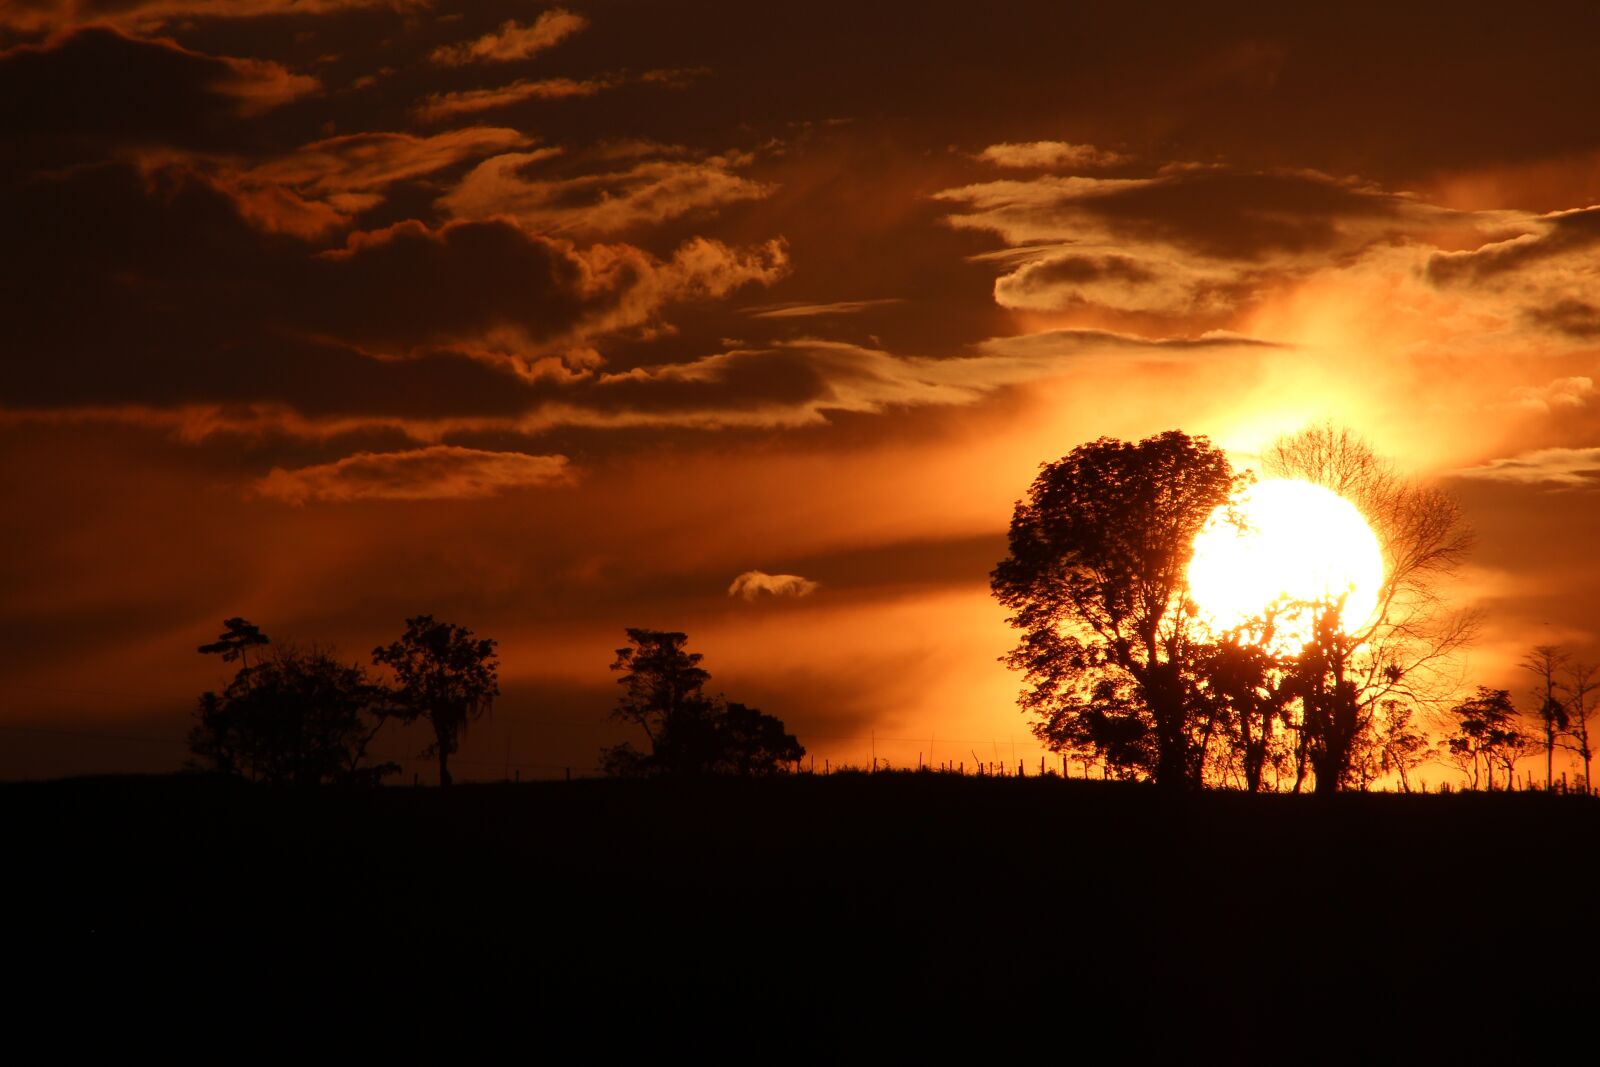 Canon EF 75-300mm f/4-5.6 USM sample photo. Sunset, dramatic, orange sky photography